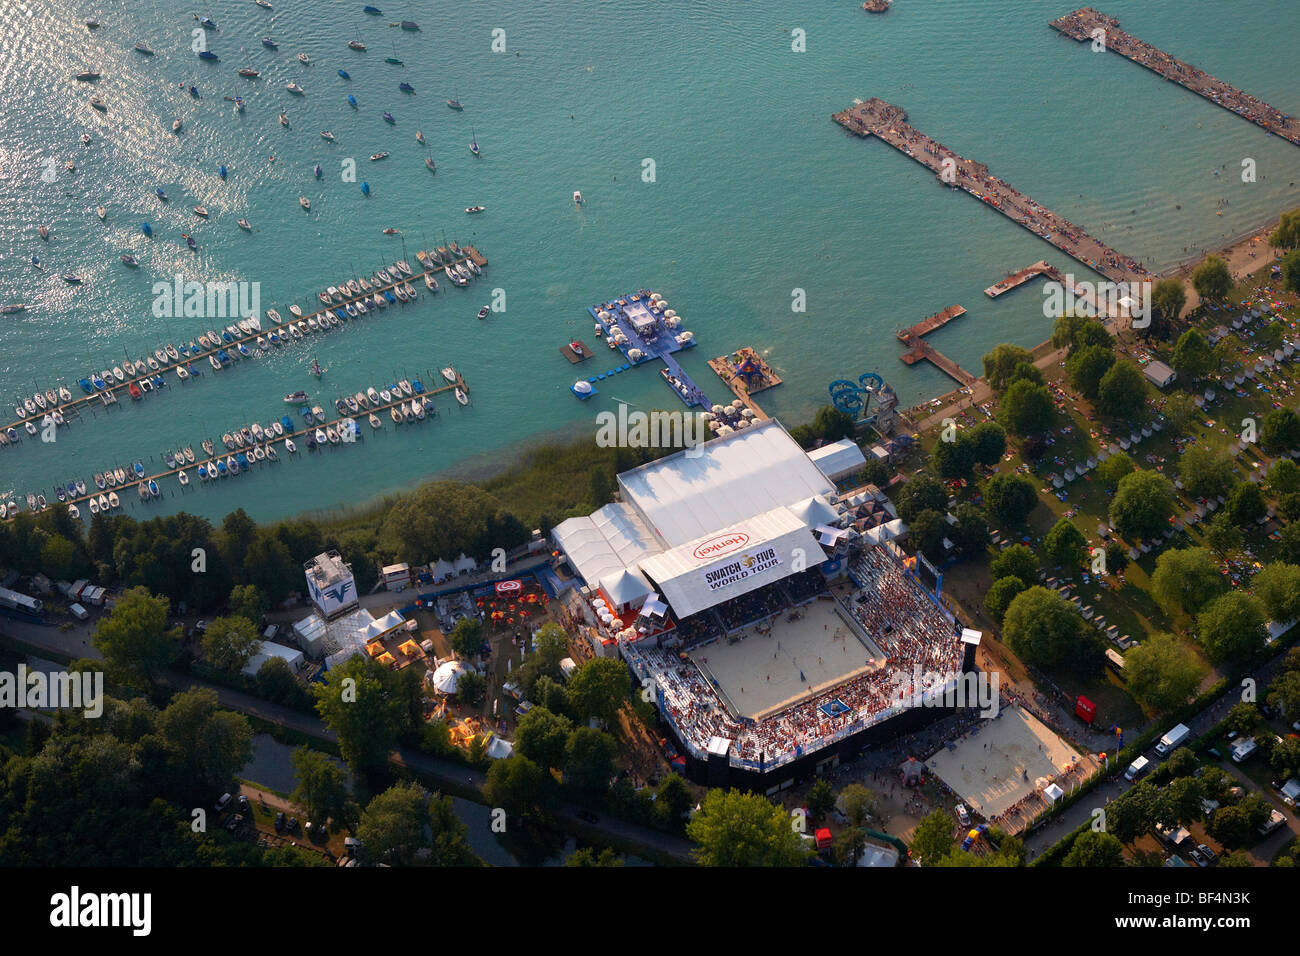 Grand Chelem de beach volley, photo aérienne, Klagenfurt, lac Woerthsee, Carinthie, Autriche, Europe Banque D'Images